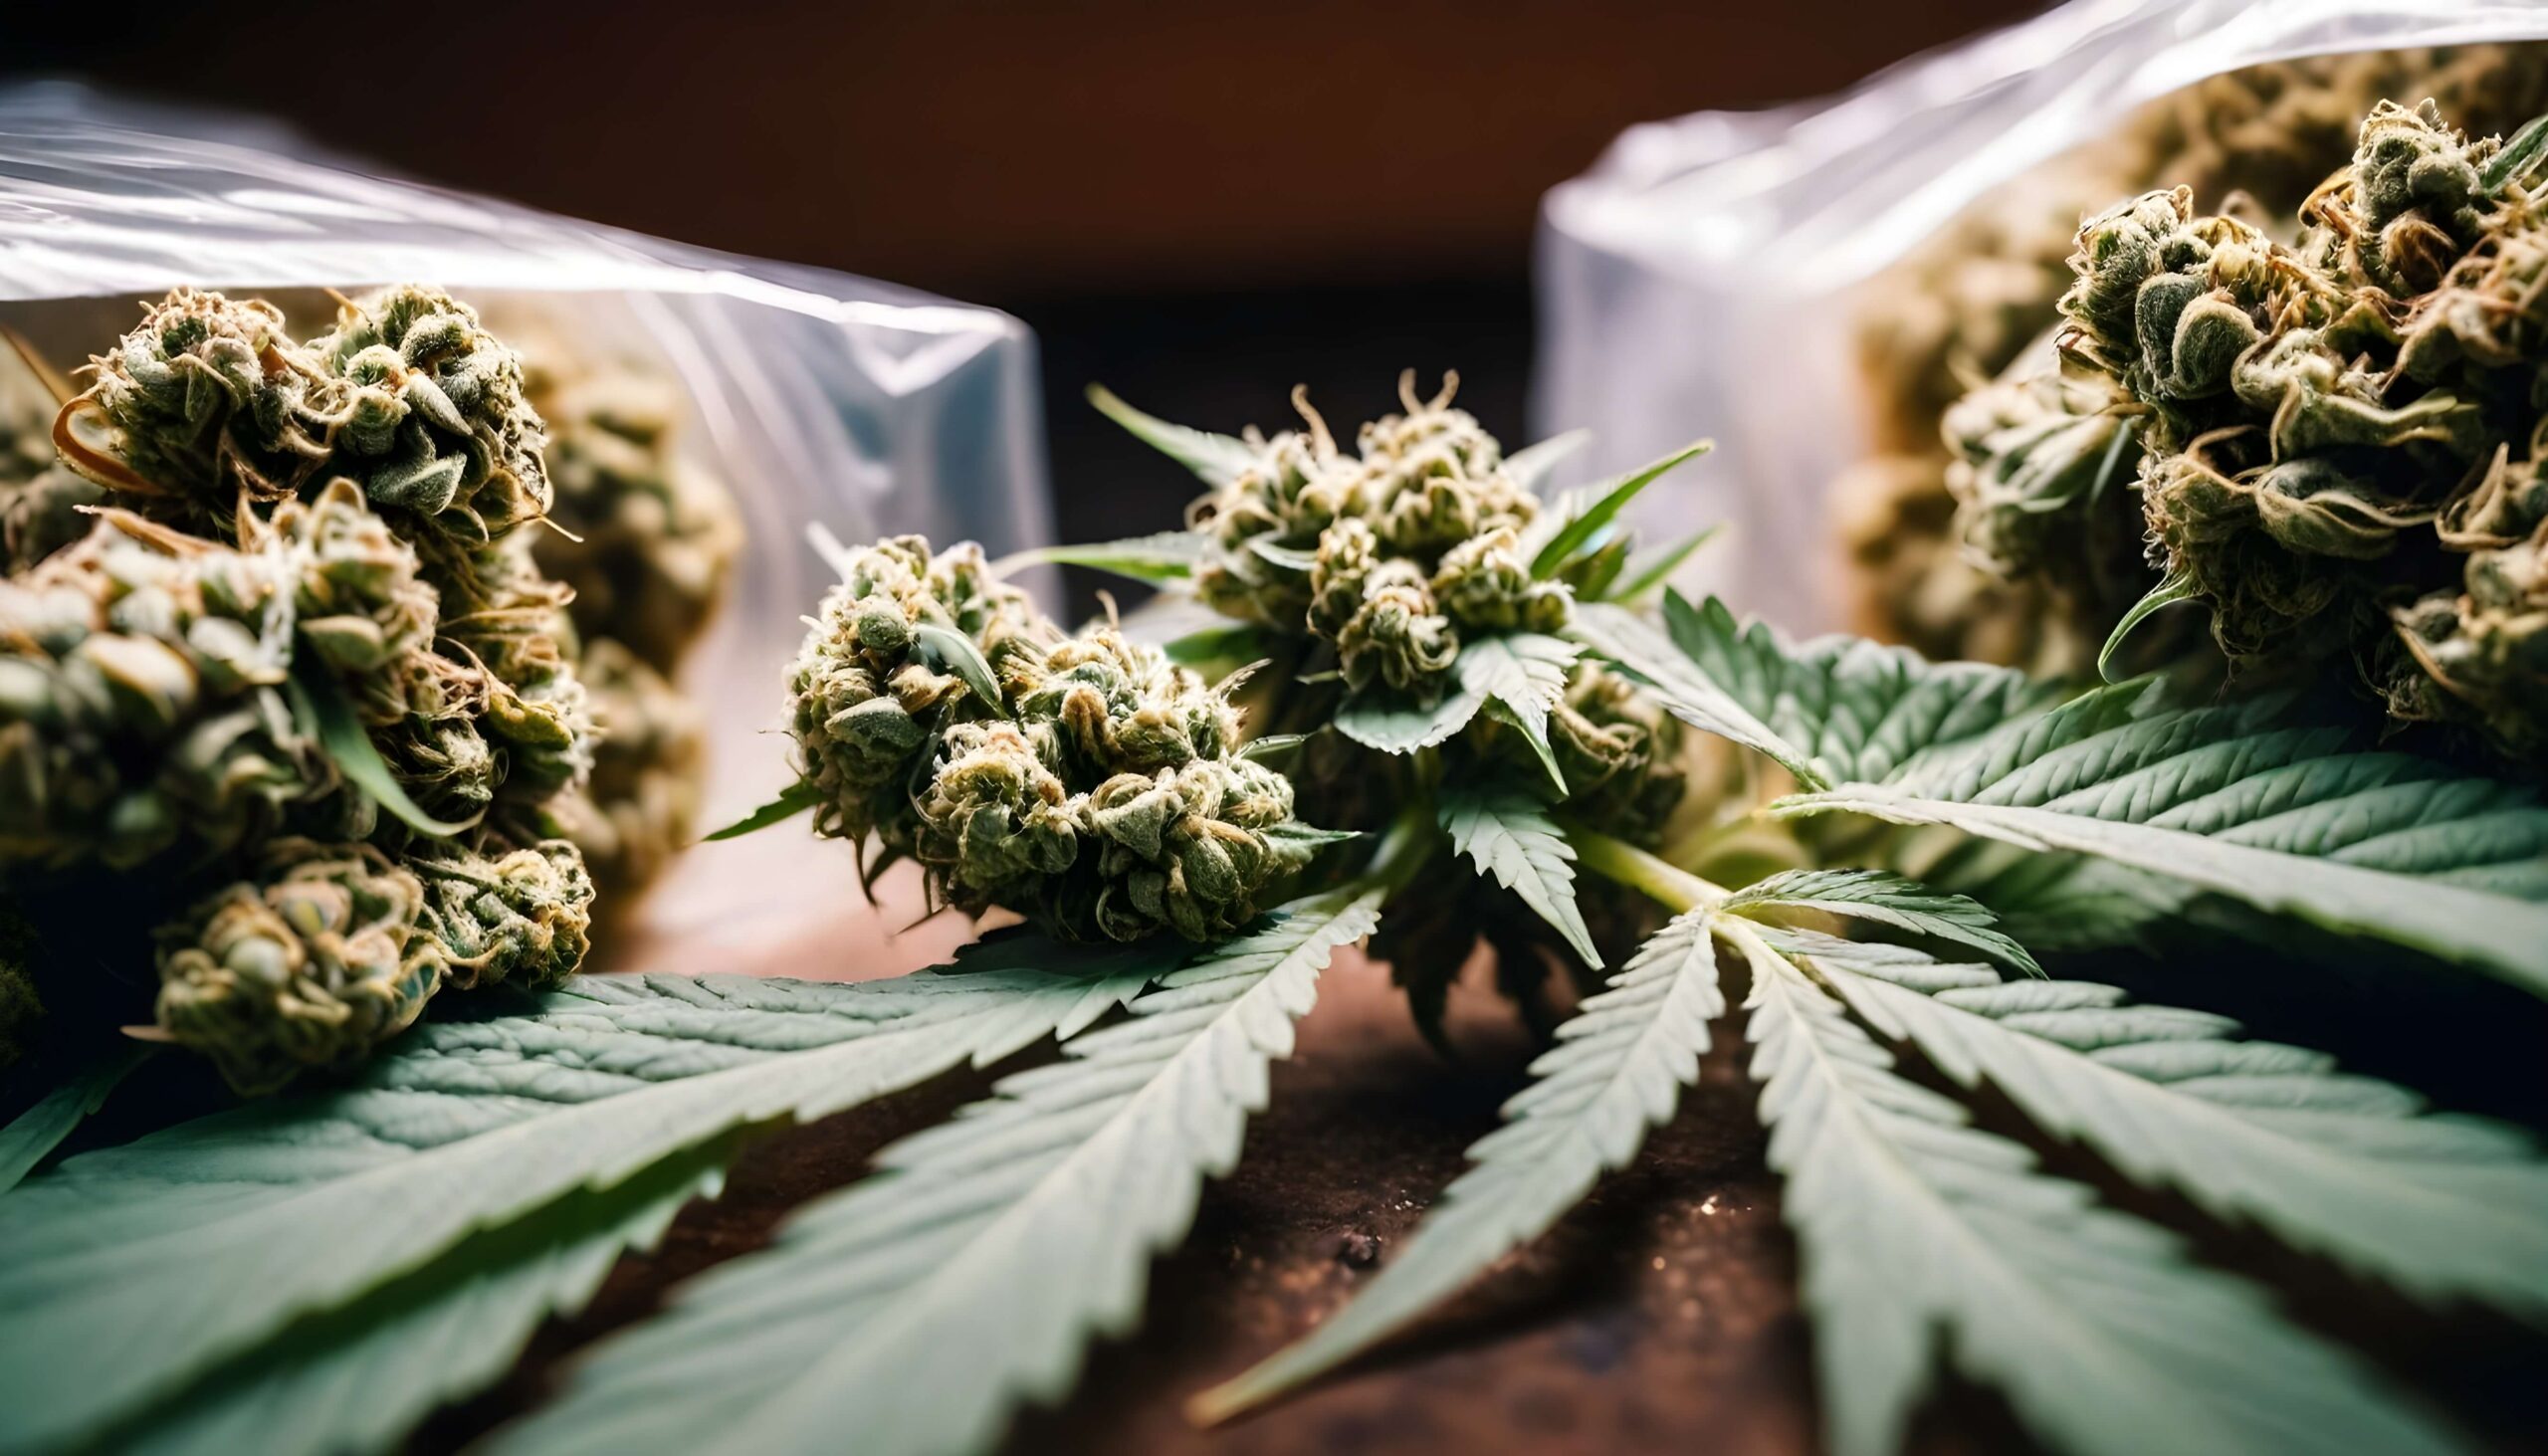 Massachusetts' Record Sales of Marijuana on 420 A $6 Billion Milestone